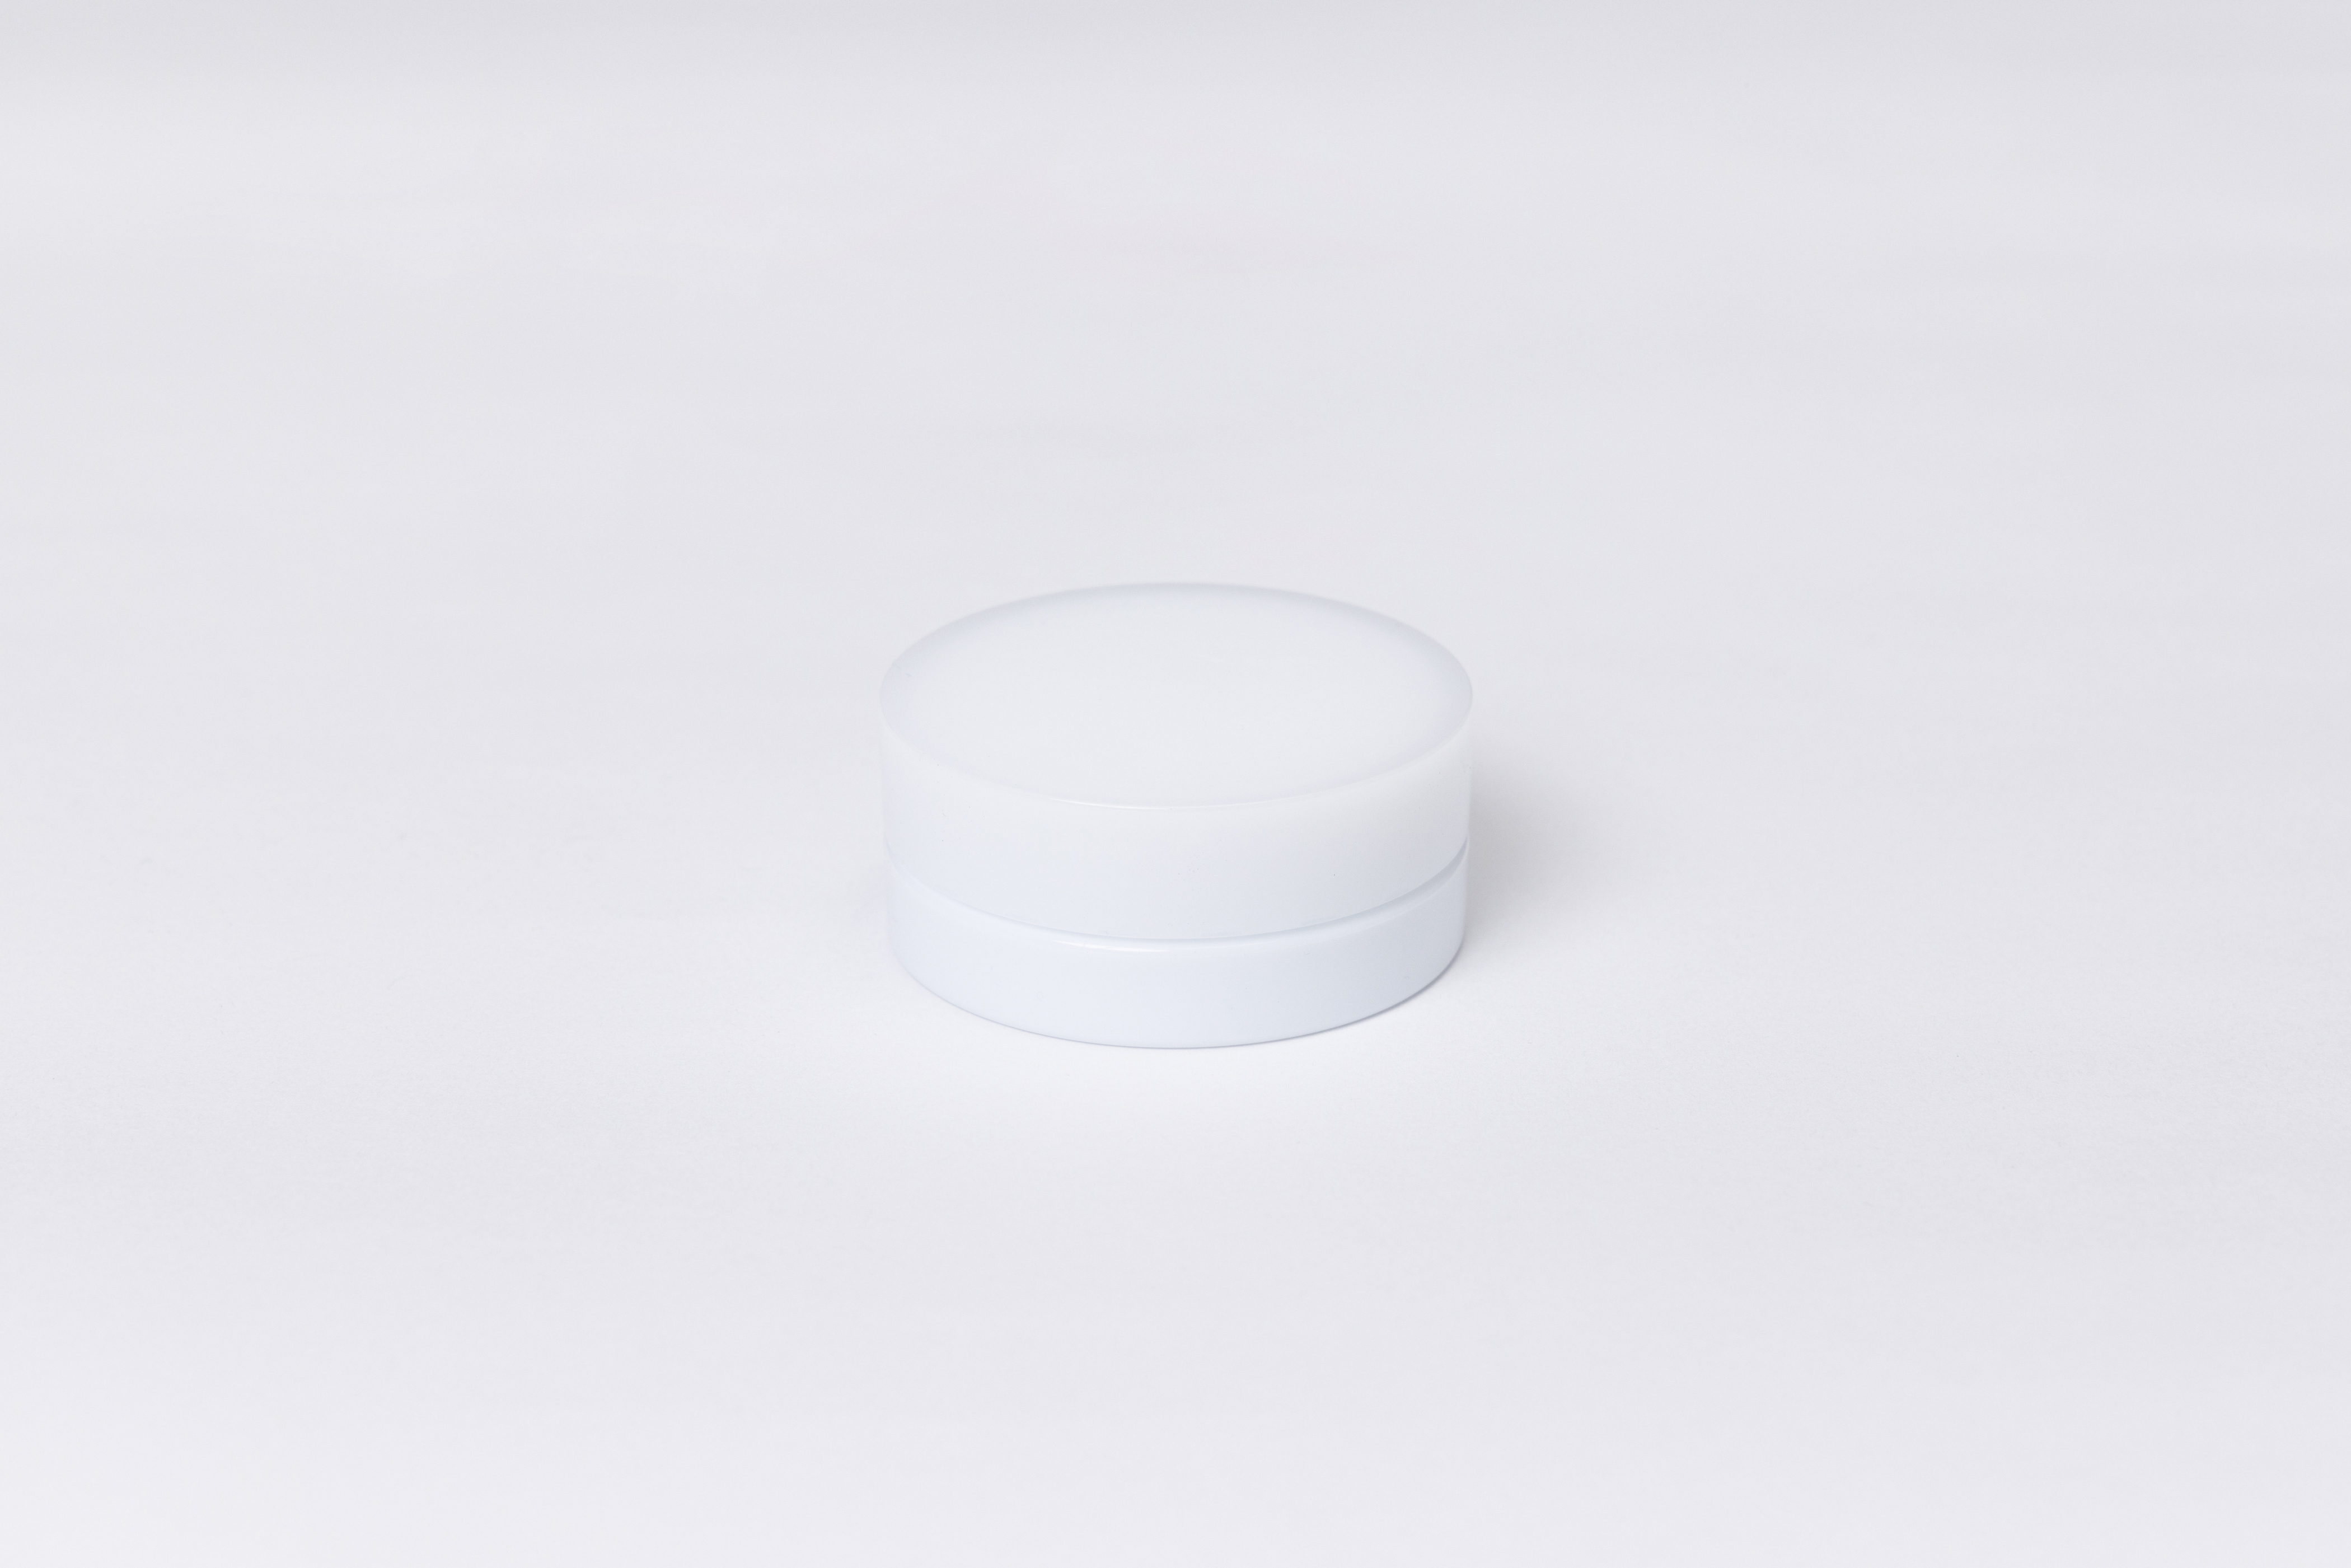 【化粧品容器】小ロット在庫対応の標準色ホワイト仕様クリームジャー ポルン 30g〈クリーム容器〉